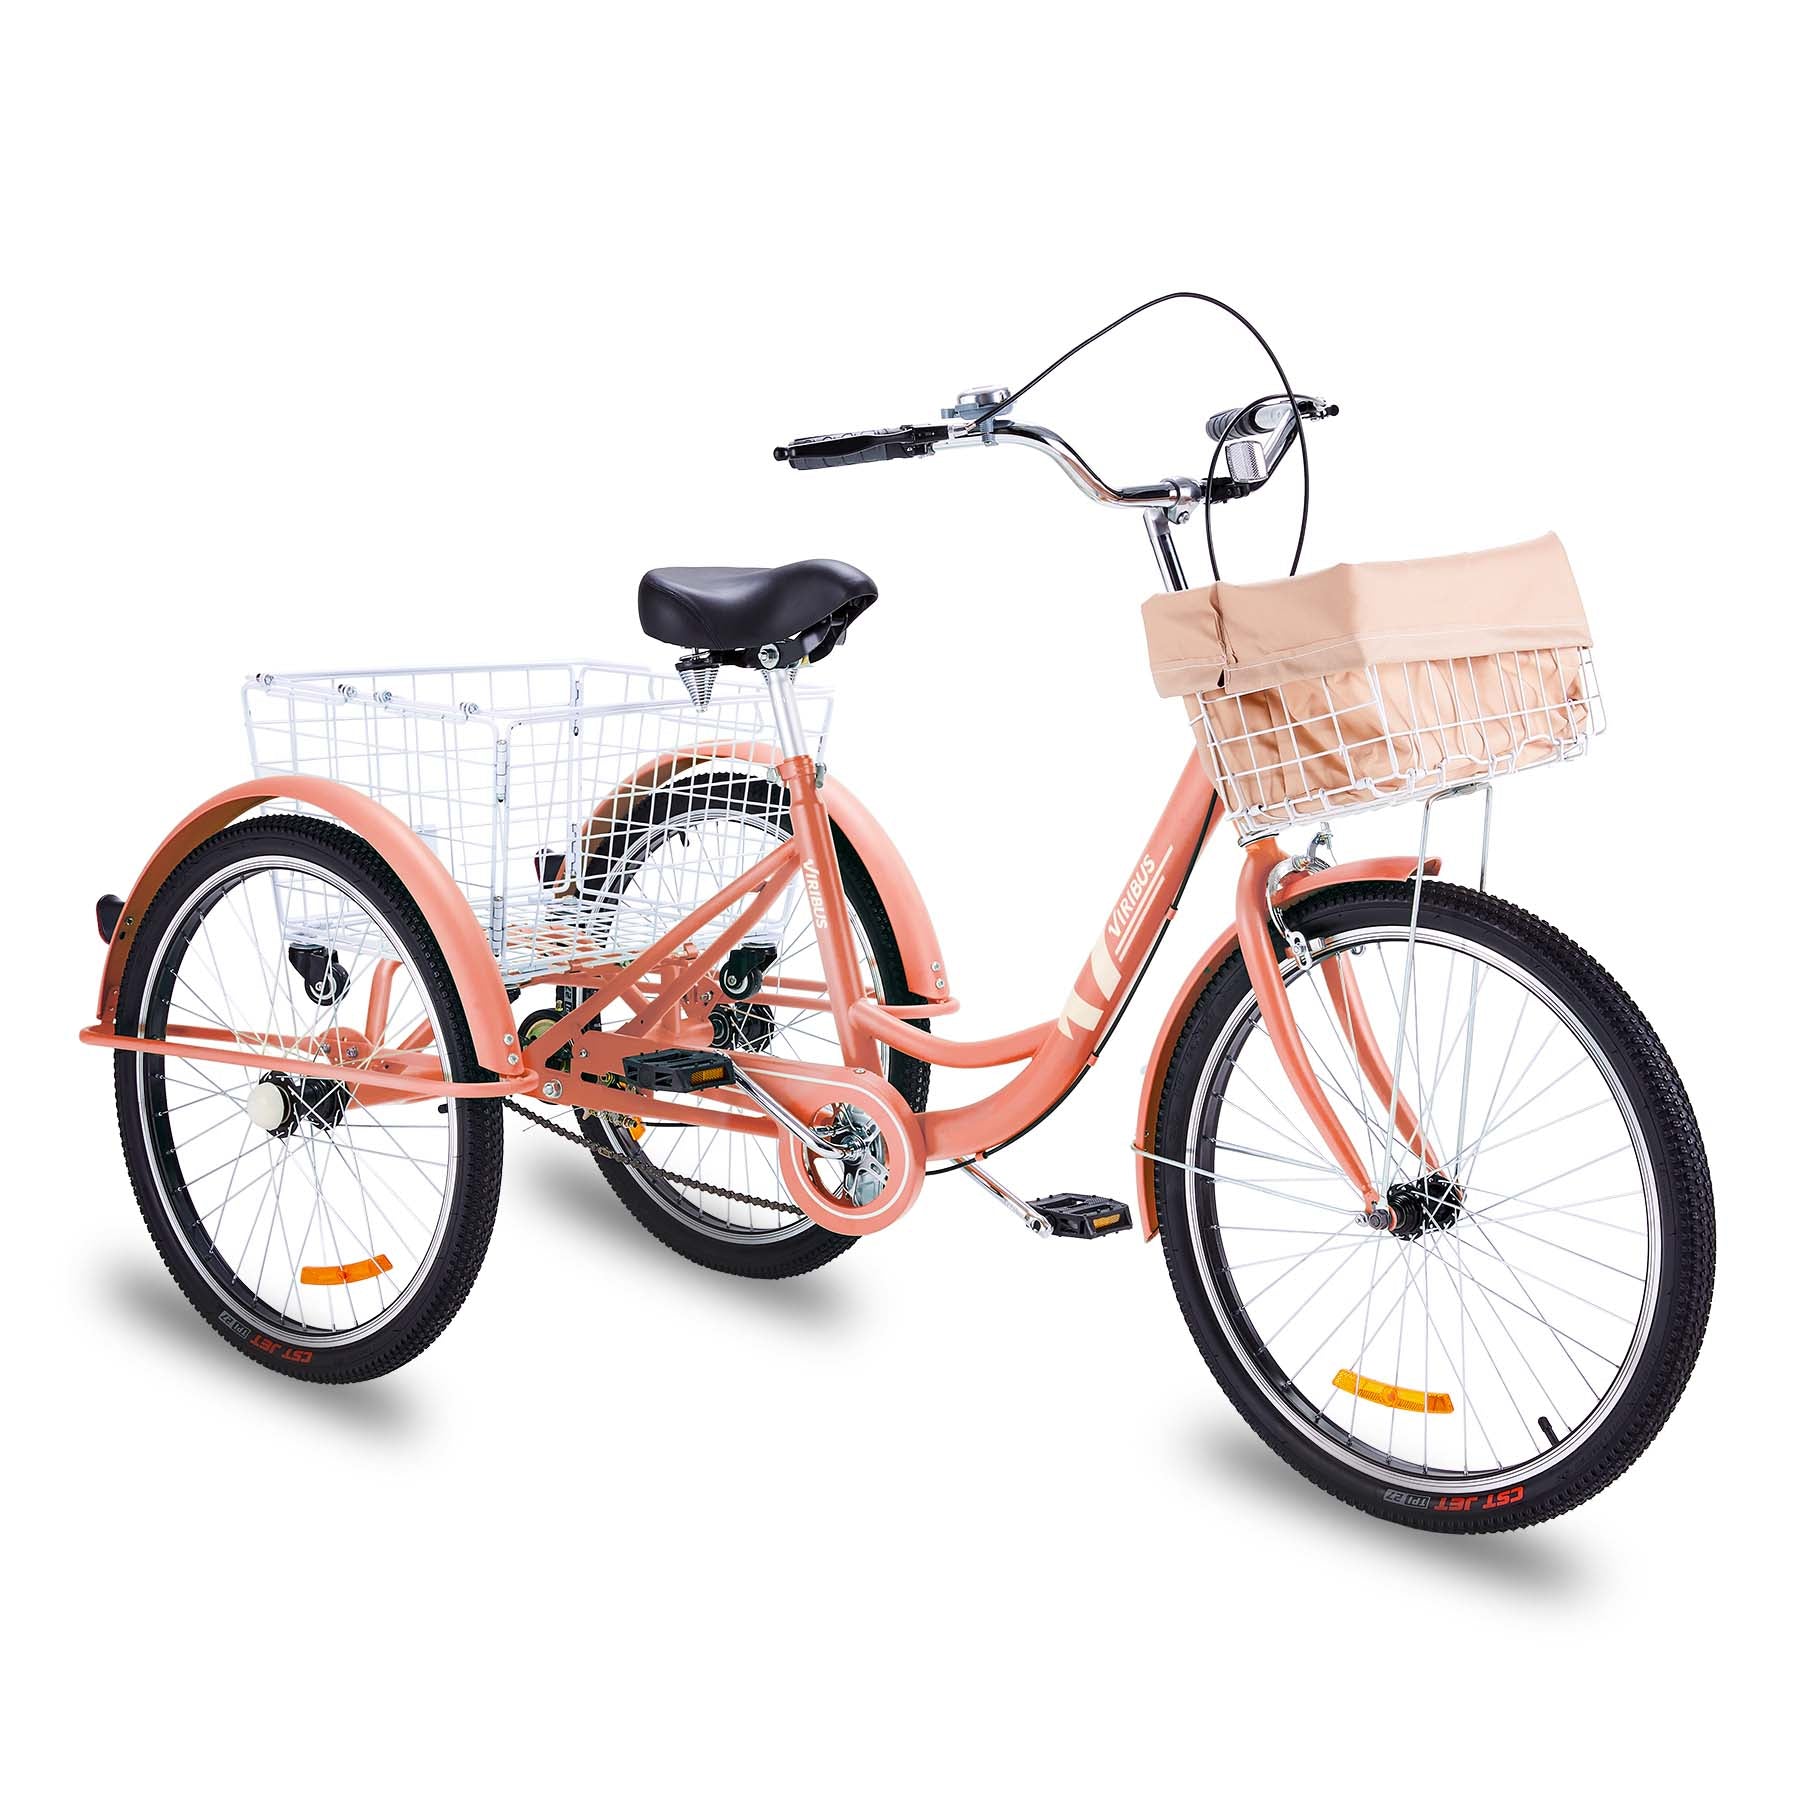 Viribus Adult Tricycle For Sale, Three Wheel Bike, Pink, 24"&26" 